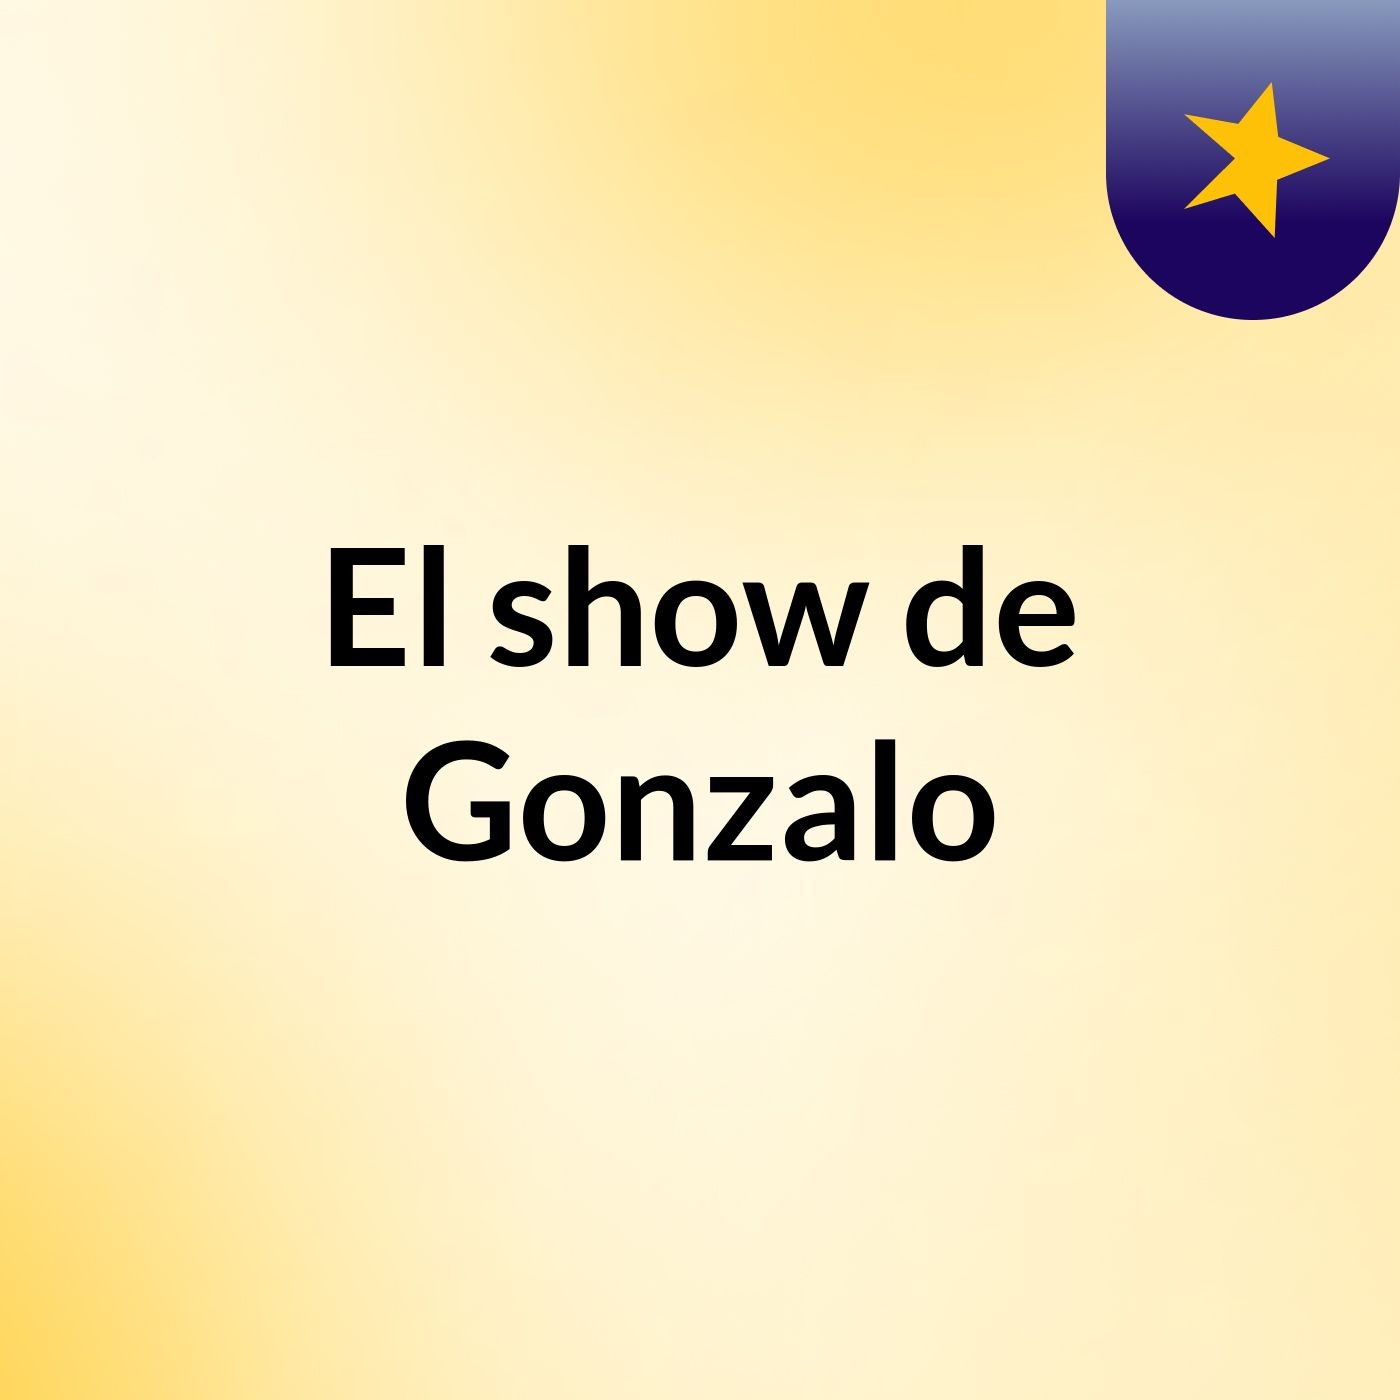 Episodio 4 - El show de Gonzalo